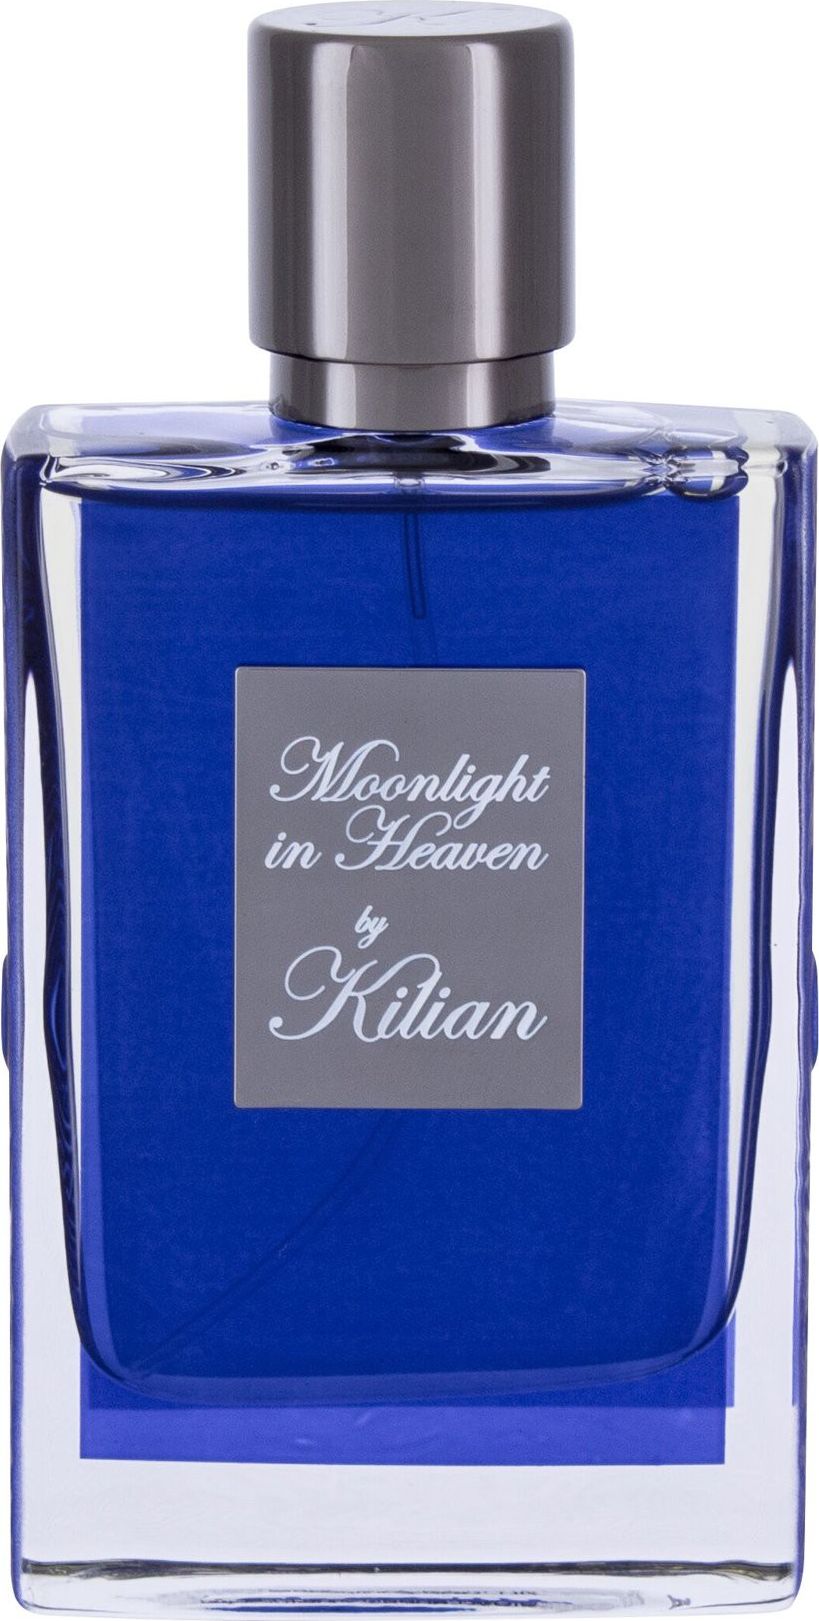 By Kilian By Kilian The Fresh Moonlight in Heaven Woda perfumowana 50ml zestaw upominkowy